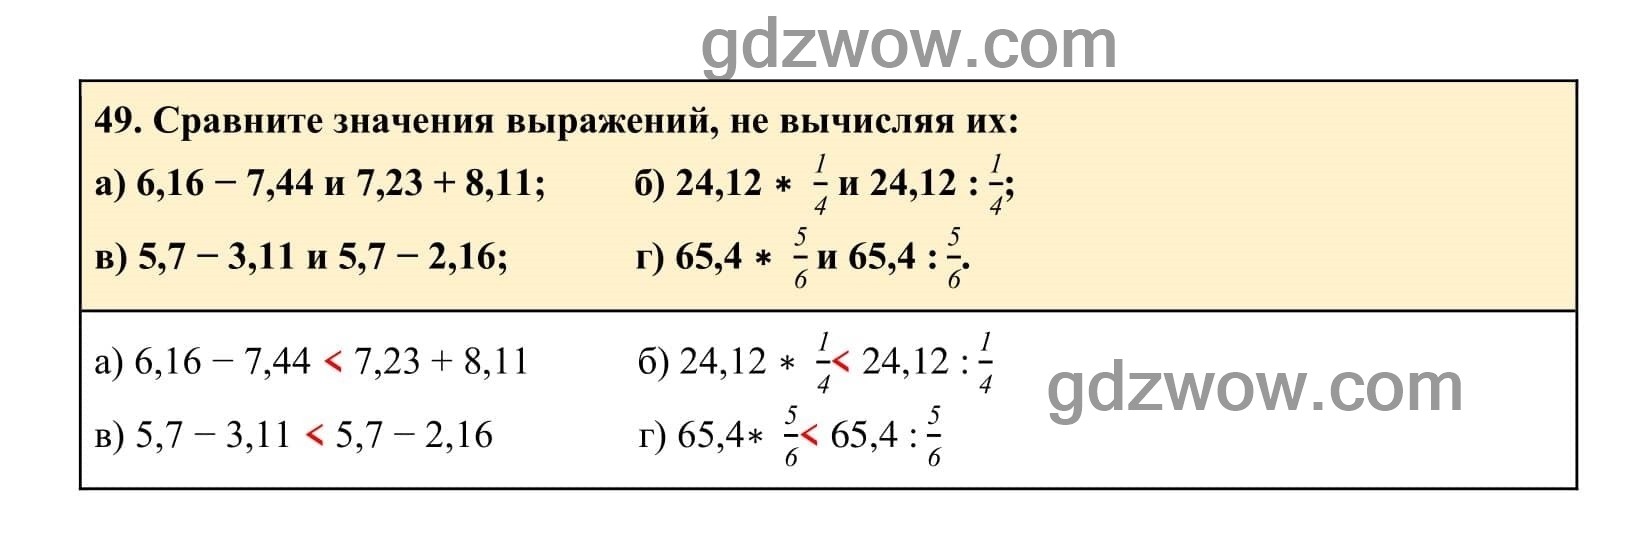 Упражнение 49 - ГДЗ по Алгебре 7 класс Учебник Макарычев (решебник) - GDZwow